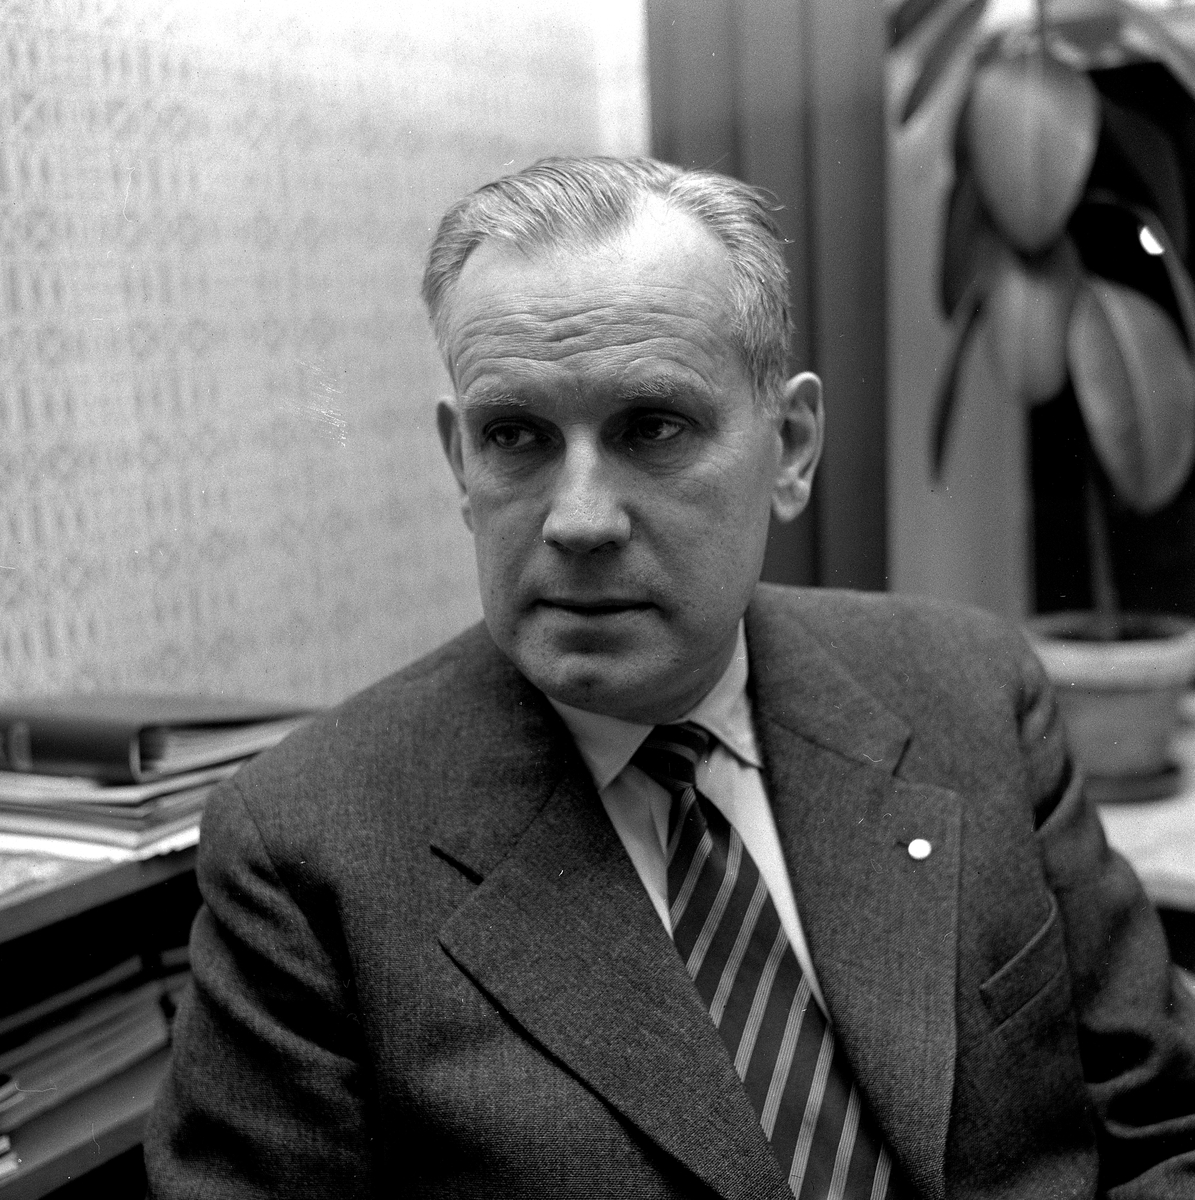 Direktör Håkan Permalm, Skofabriken Kronan.
November 1956.